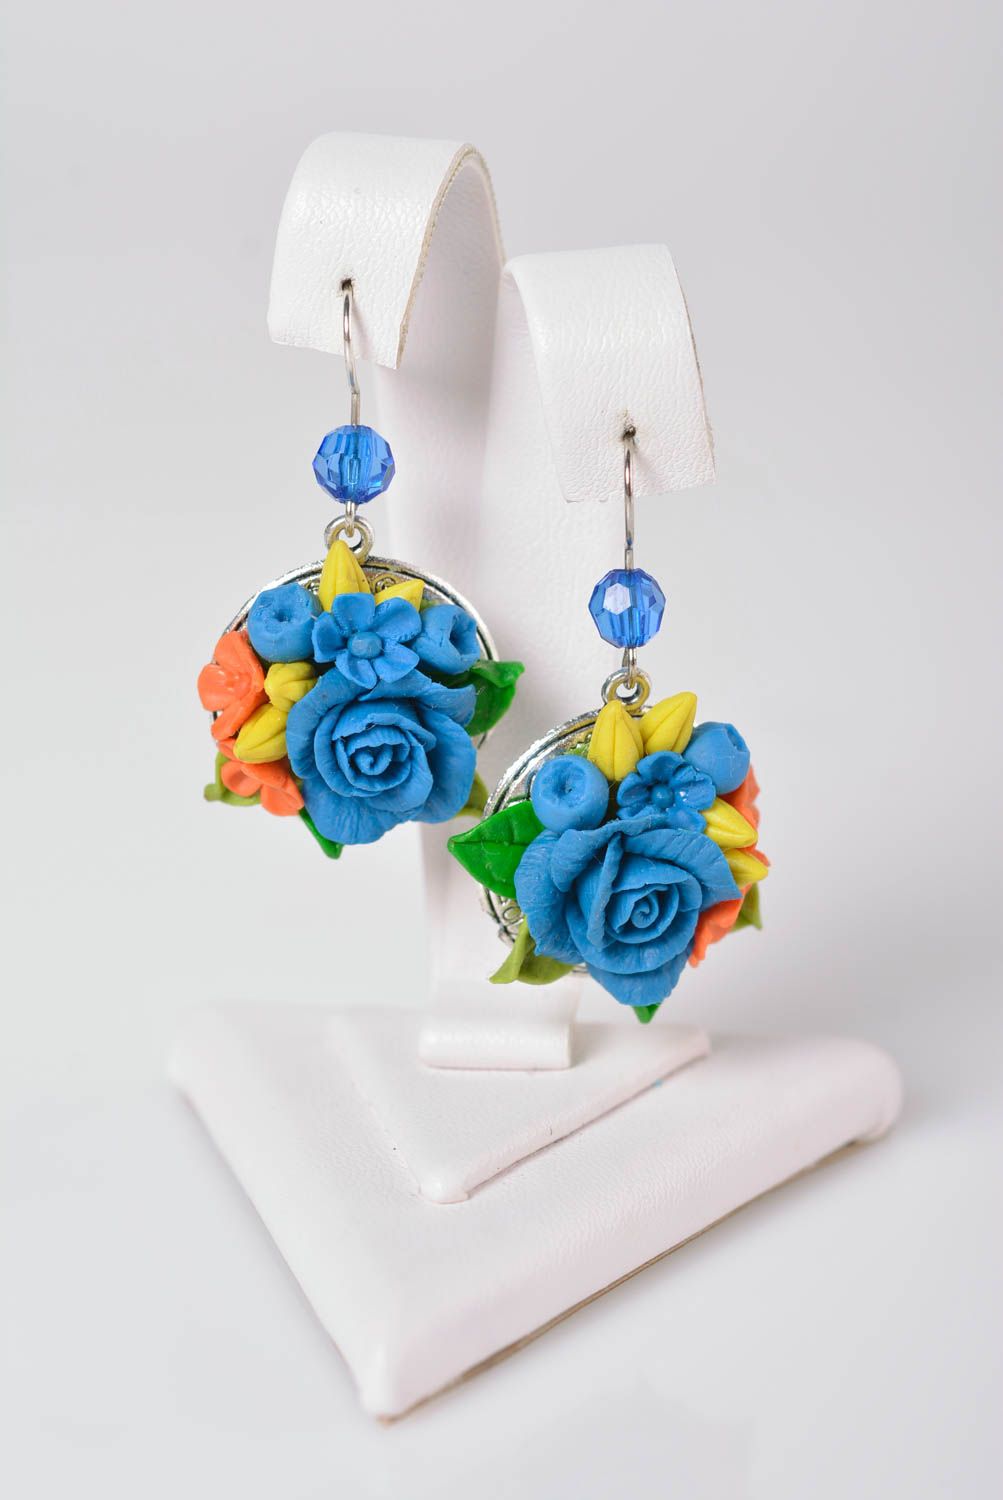 Handmade bijouterie porcelain earrings molded flower earrings fashion jewelry photo 1